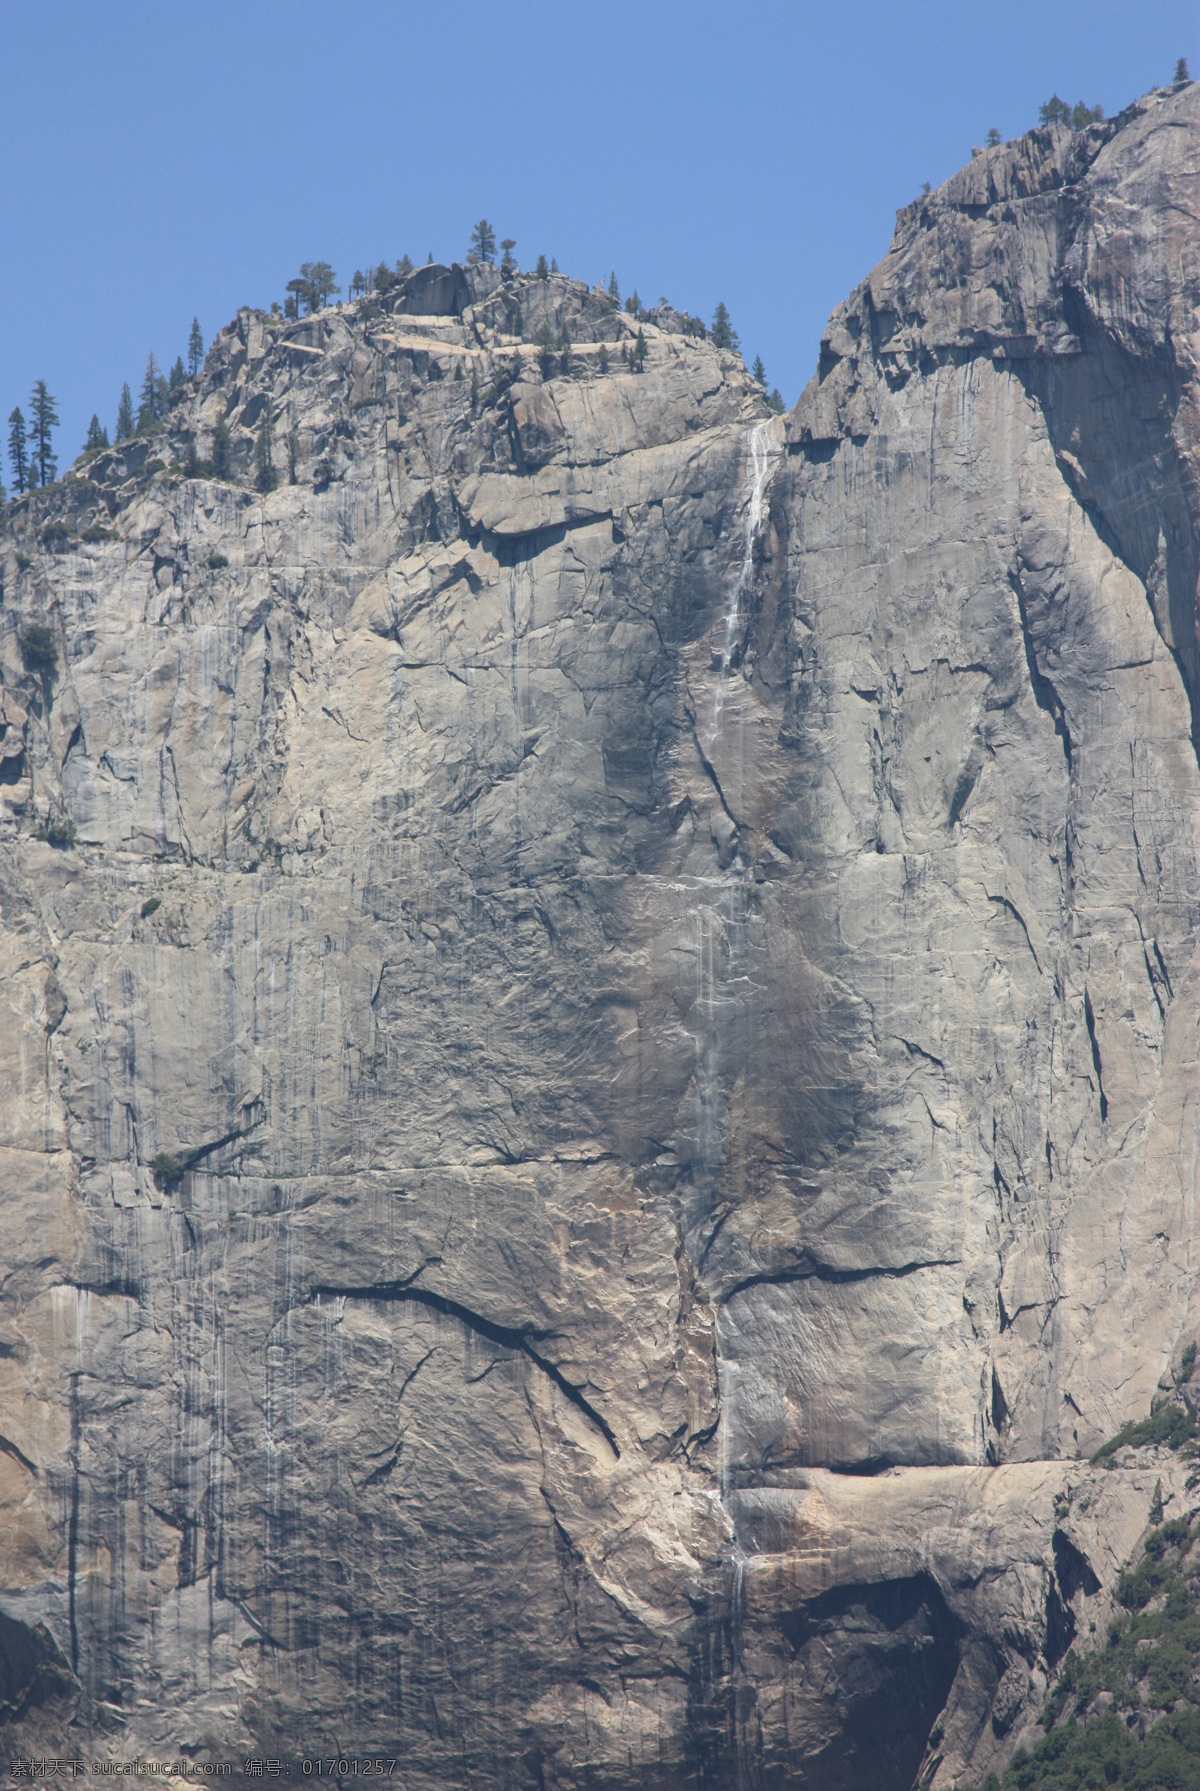 加利福尼亚 美国 国家公园 山峦 天空 蓝天 远山 高山 层峦叠嶂 沟谷 峡谷 峭壁 悬崖 山崖 自然 大自然 自然风光 自然风景 自然景观